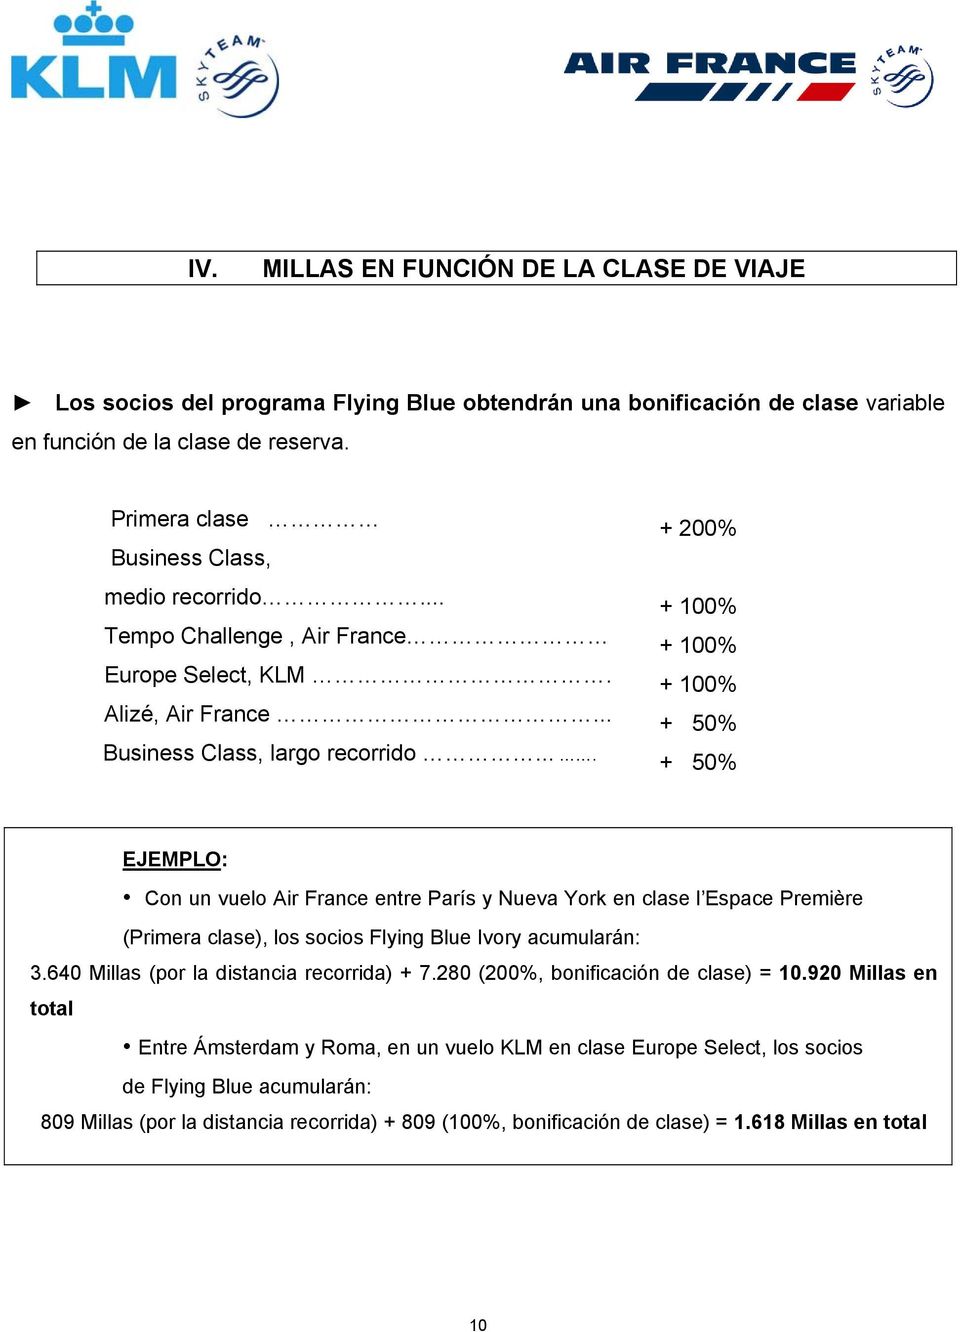 ... + 200% + 100% + 100% + 100% + 50% + 50% EJEMPLO: Cn un vuel Air France entre París y Nueva Yrk en clase l Espace Première (Primera clase), ls scis Flying Blue Ivry acumularán: 3.